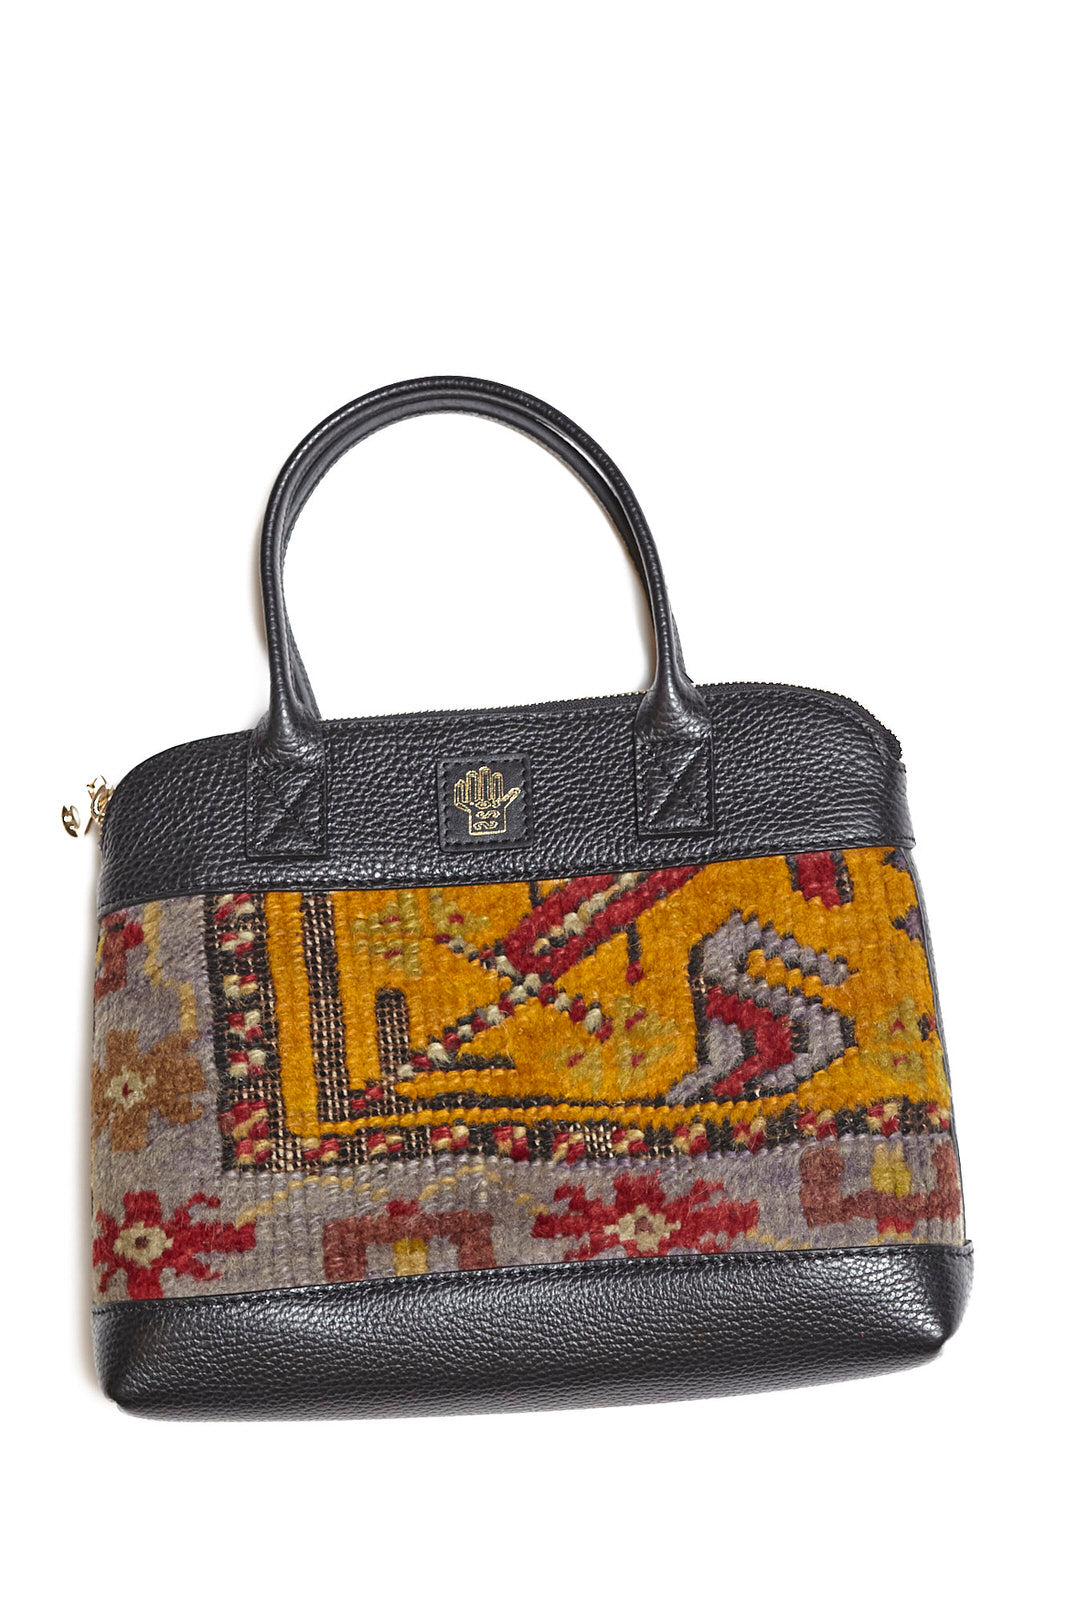 King Kennedy Isadora Handbag - 0003